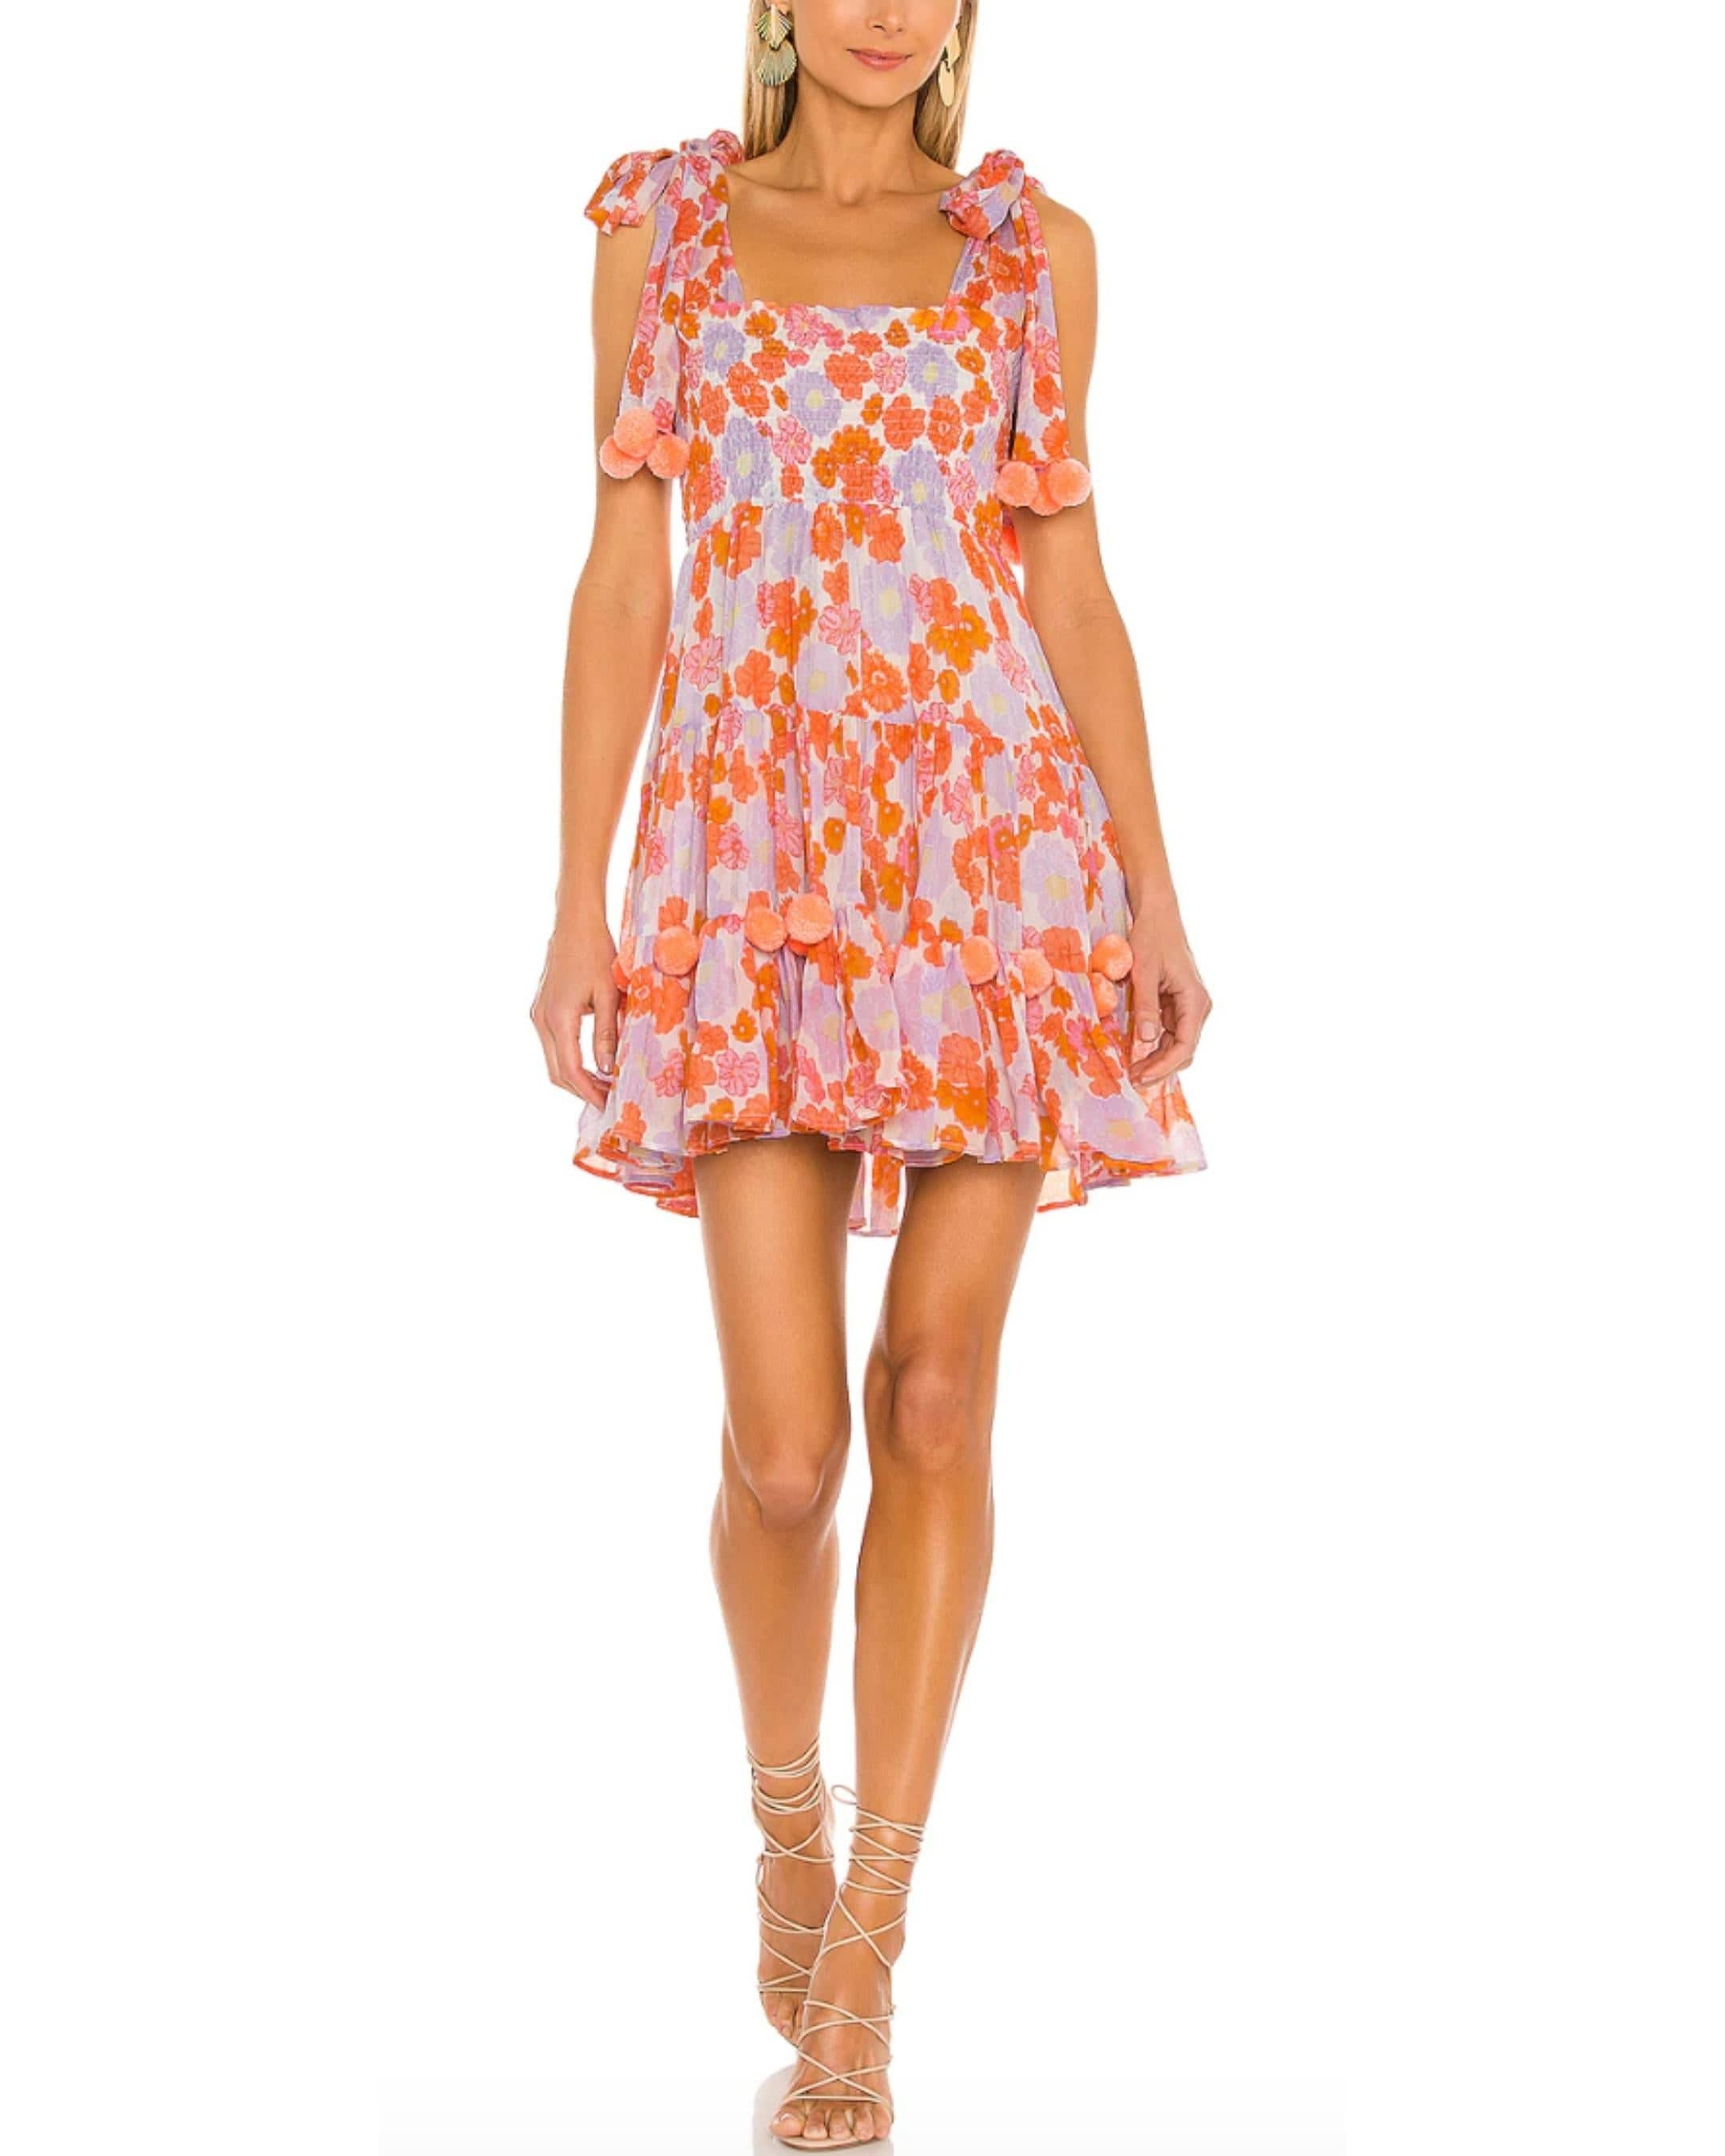 Pippa Short Dress in Flowers